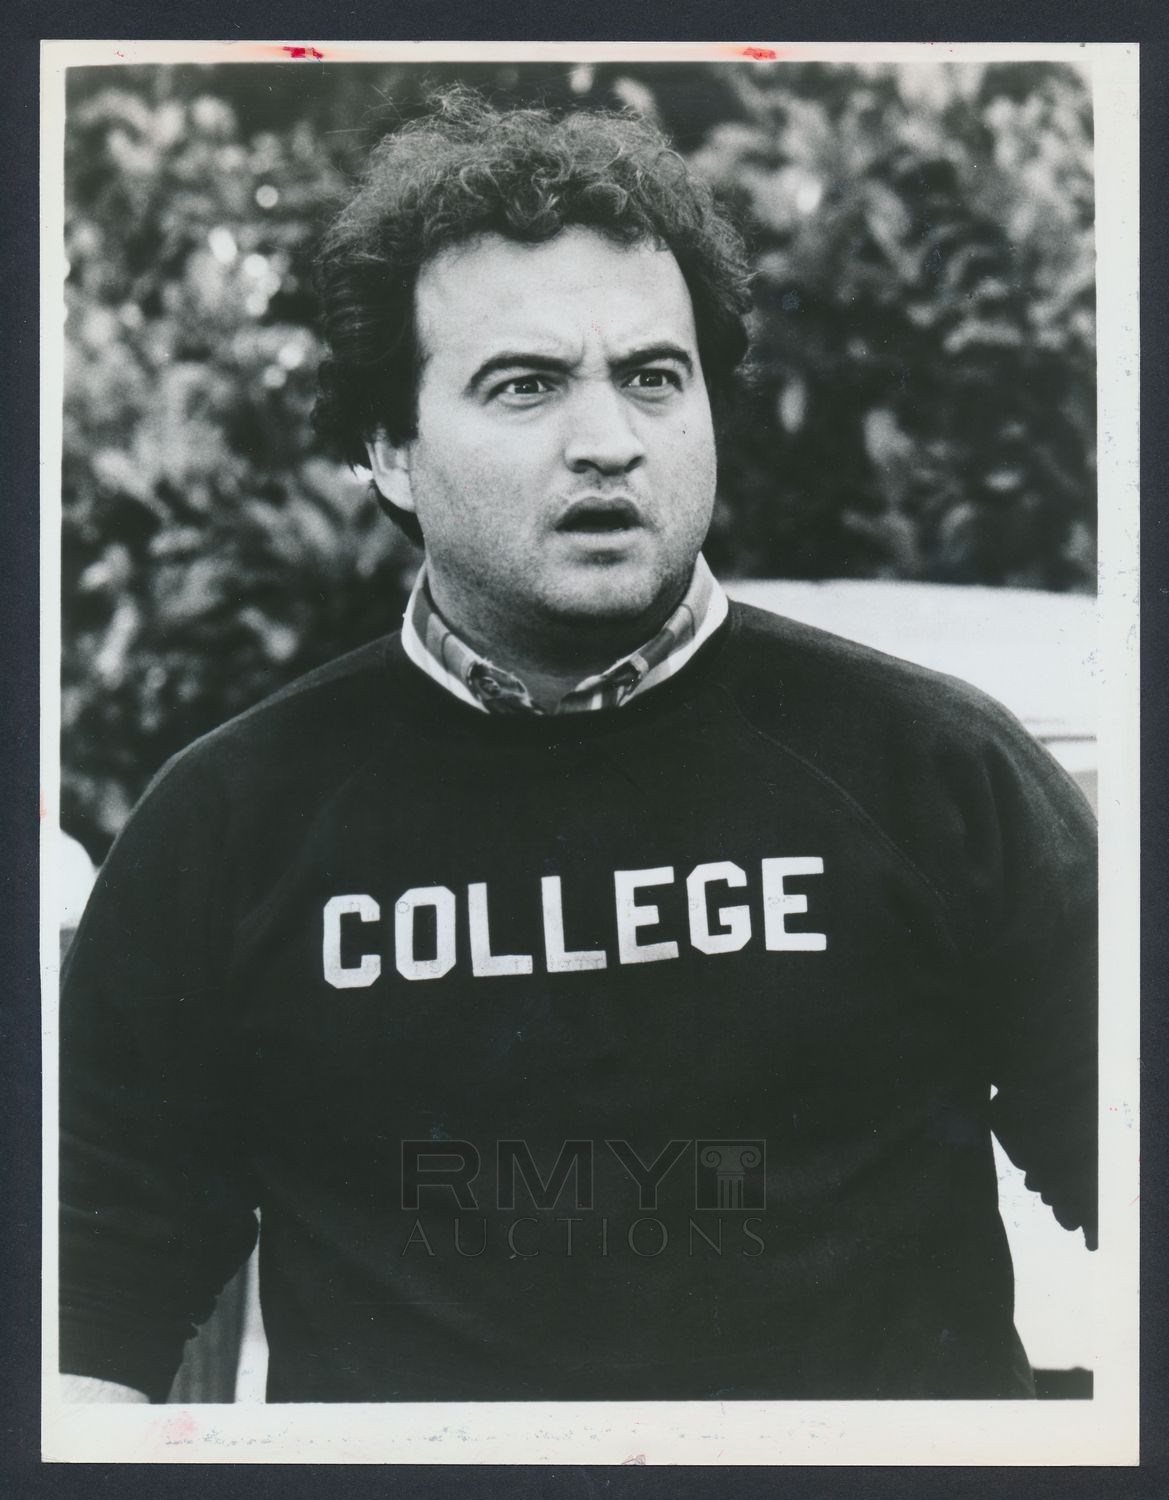 john belushi college sweatshirt